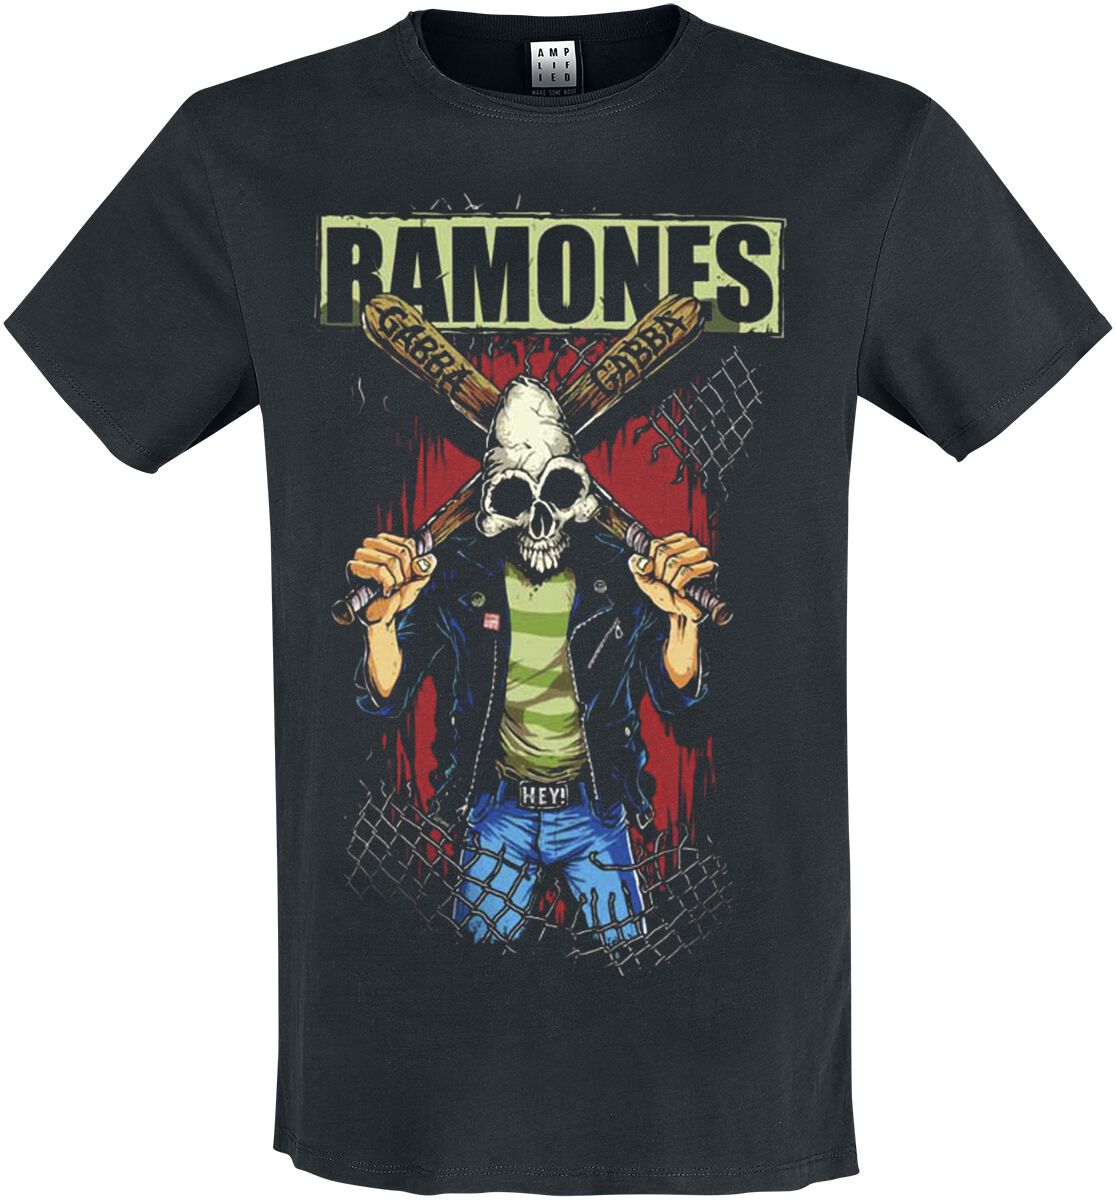 Ramones T-Shirt - Amplified Collection - Gabba Gabba - S - für Männer - Größe S - schwarz  - Lizenziertes Merchandise!